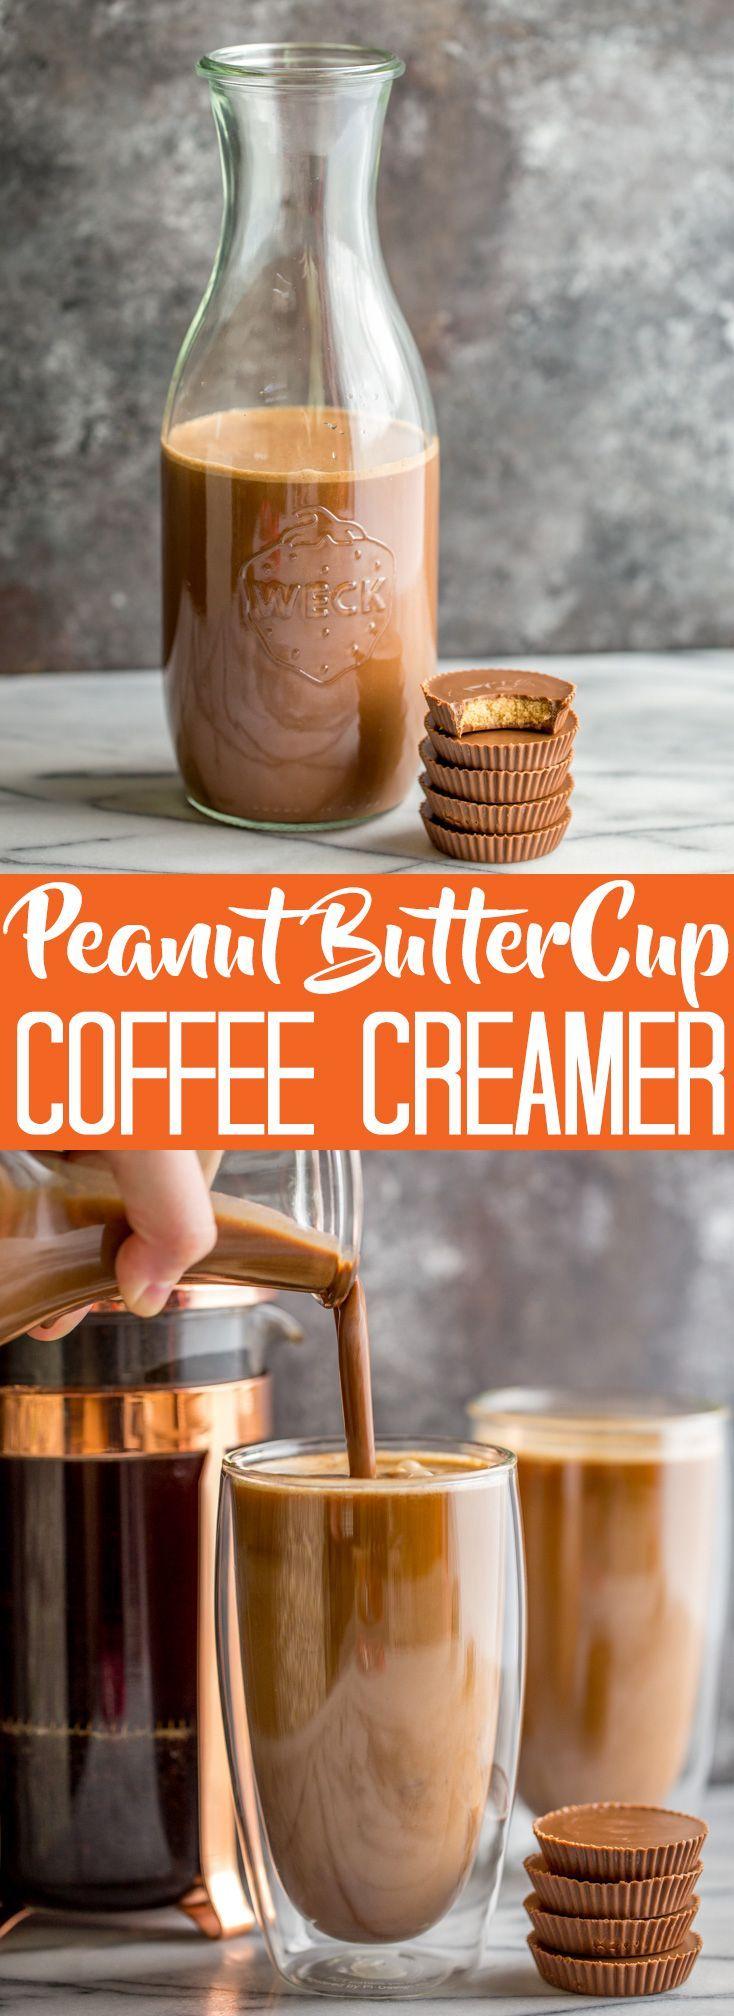 Hochzeit - Homemade Peanut Butter Cup Coffee Creamer